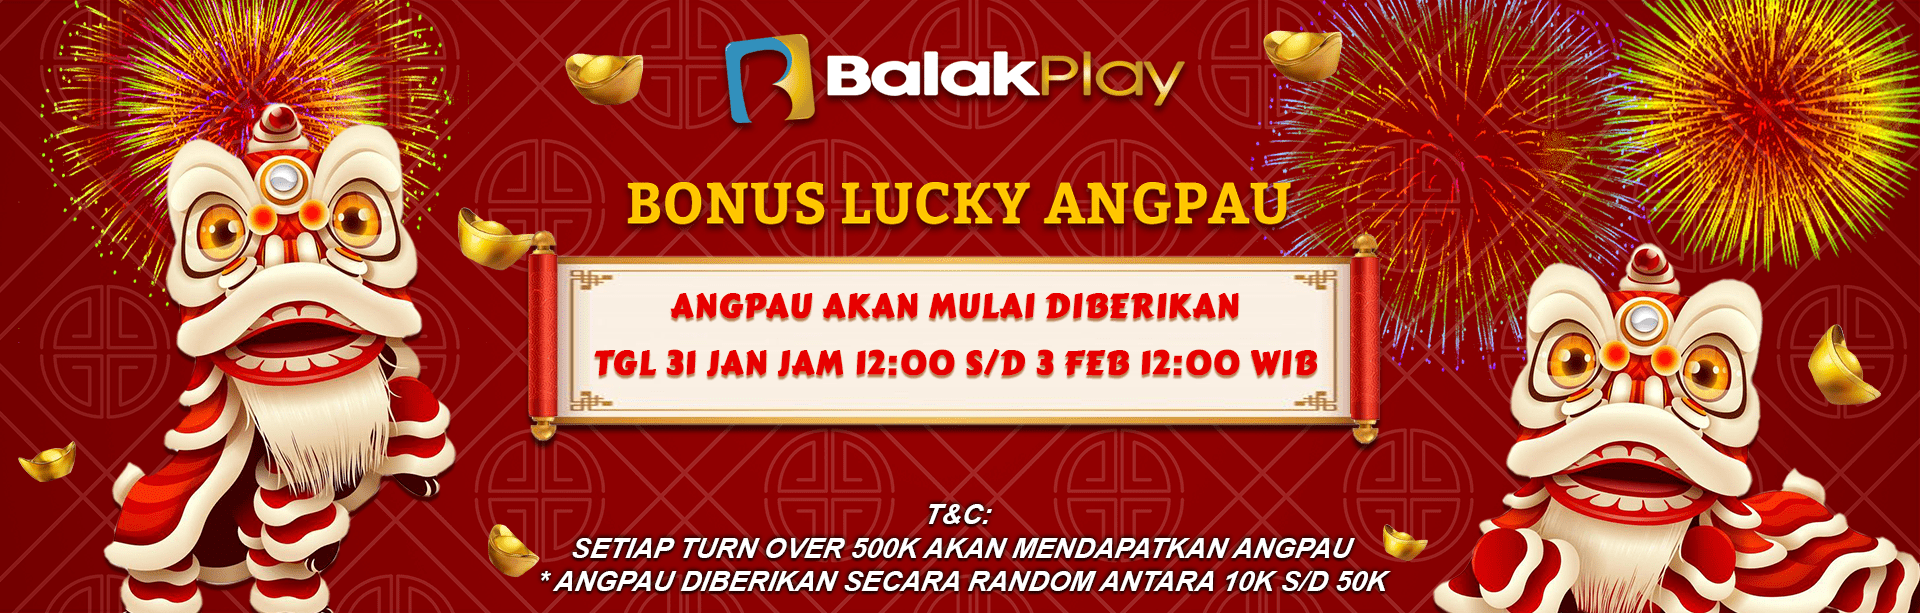 Balakplay Bonus Lucky Angpao